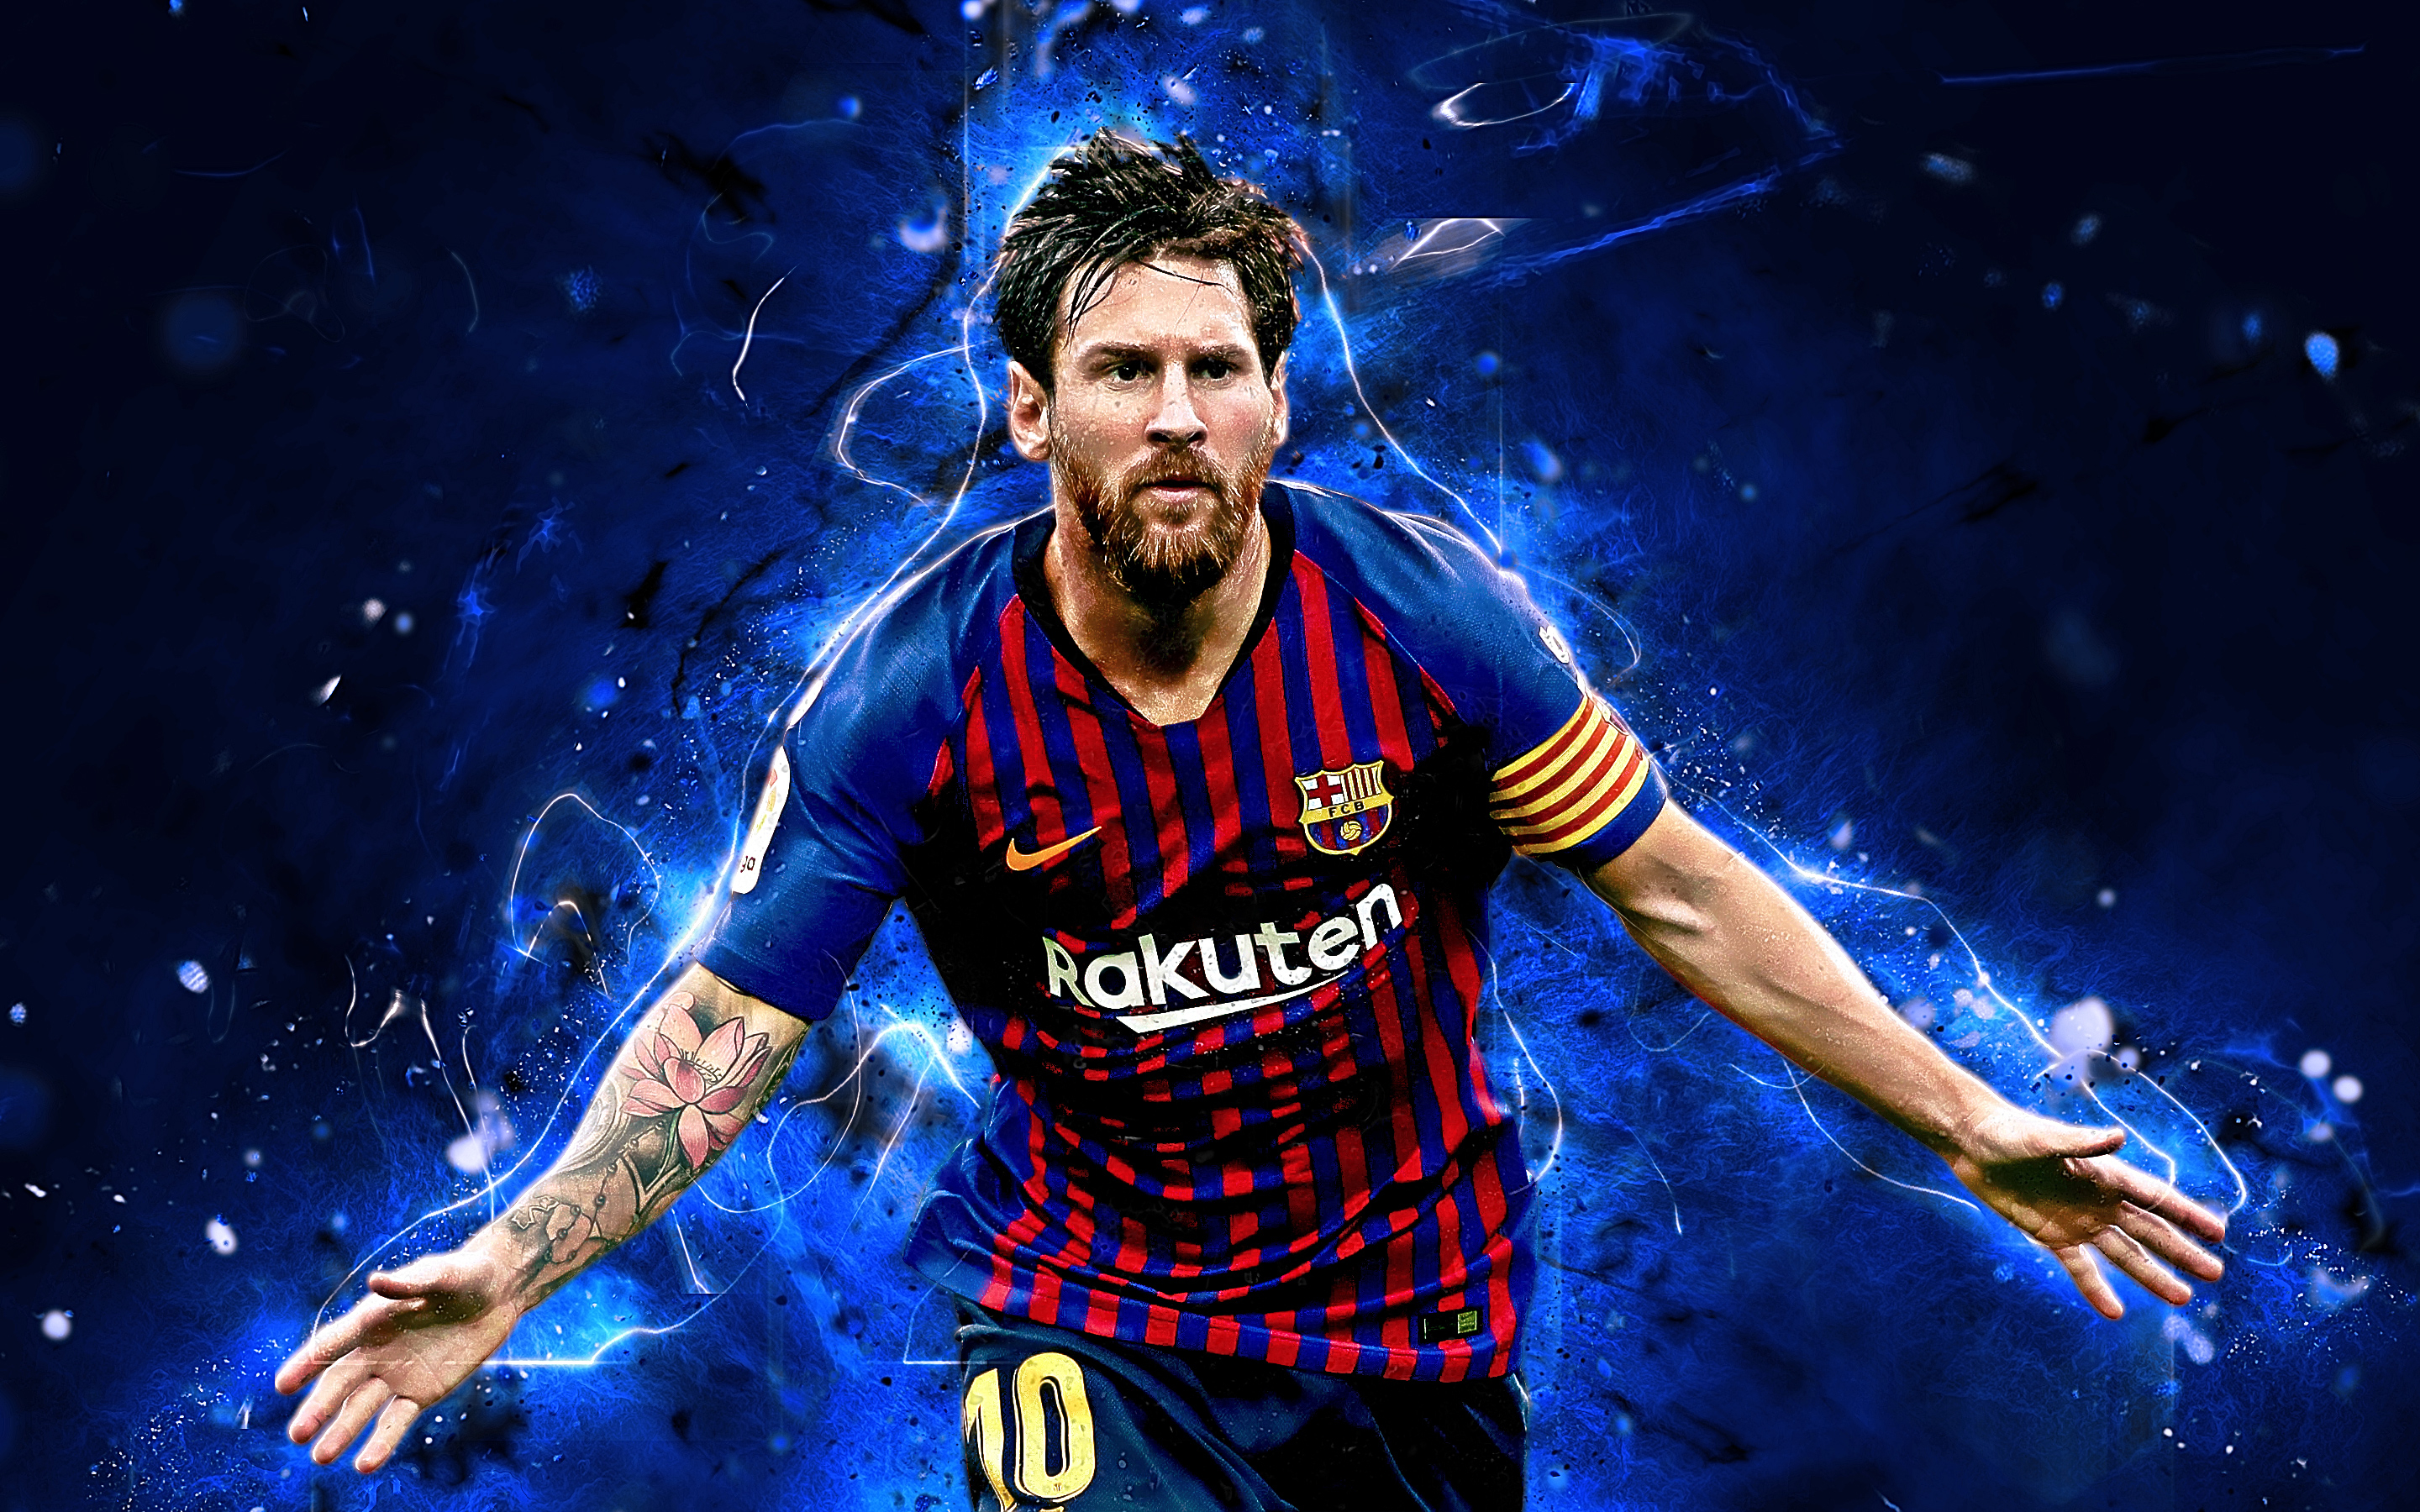 Lionel Messi - hình nền Barca chất lượng cao là lựa chọn đáng tin cậy cho những người yêu thích bóng đá. Với độ phân giải cao, người dùng sẽ cảm nhận được mọi chi tiết và sắc nét của hình ảnh.